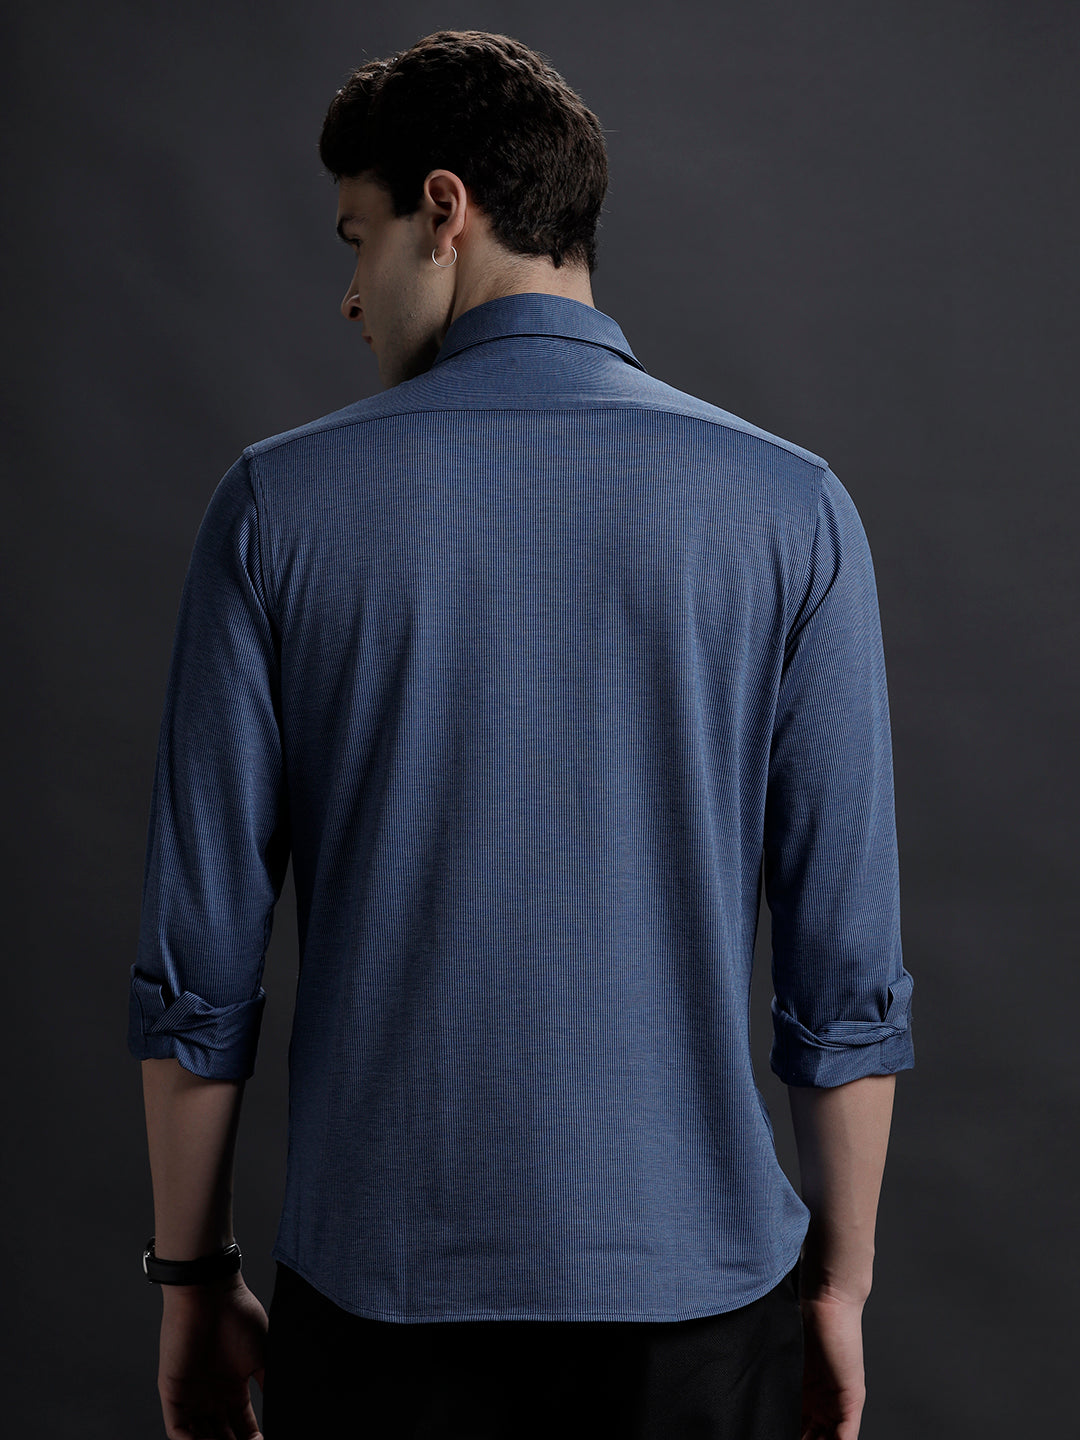 Mens Regular Fit Vertical Navy/Blue Casual Cotton Stretch Shirt (KARAH)